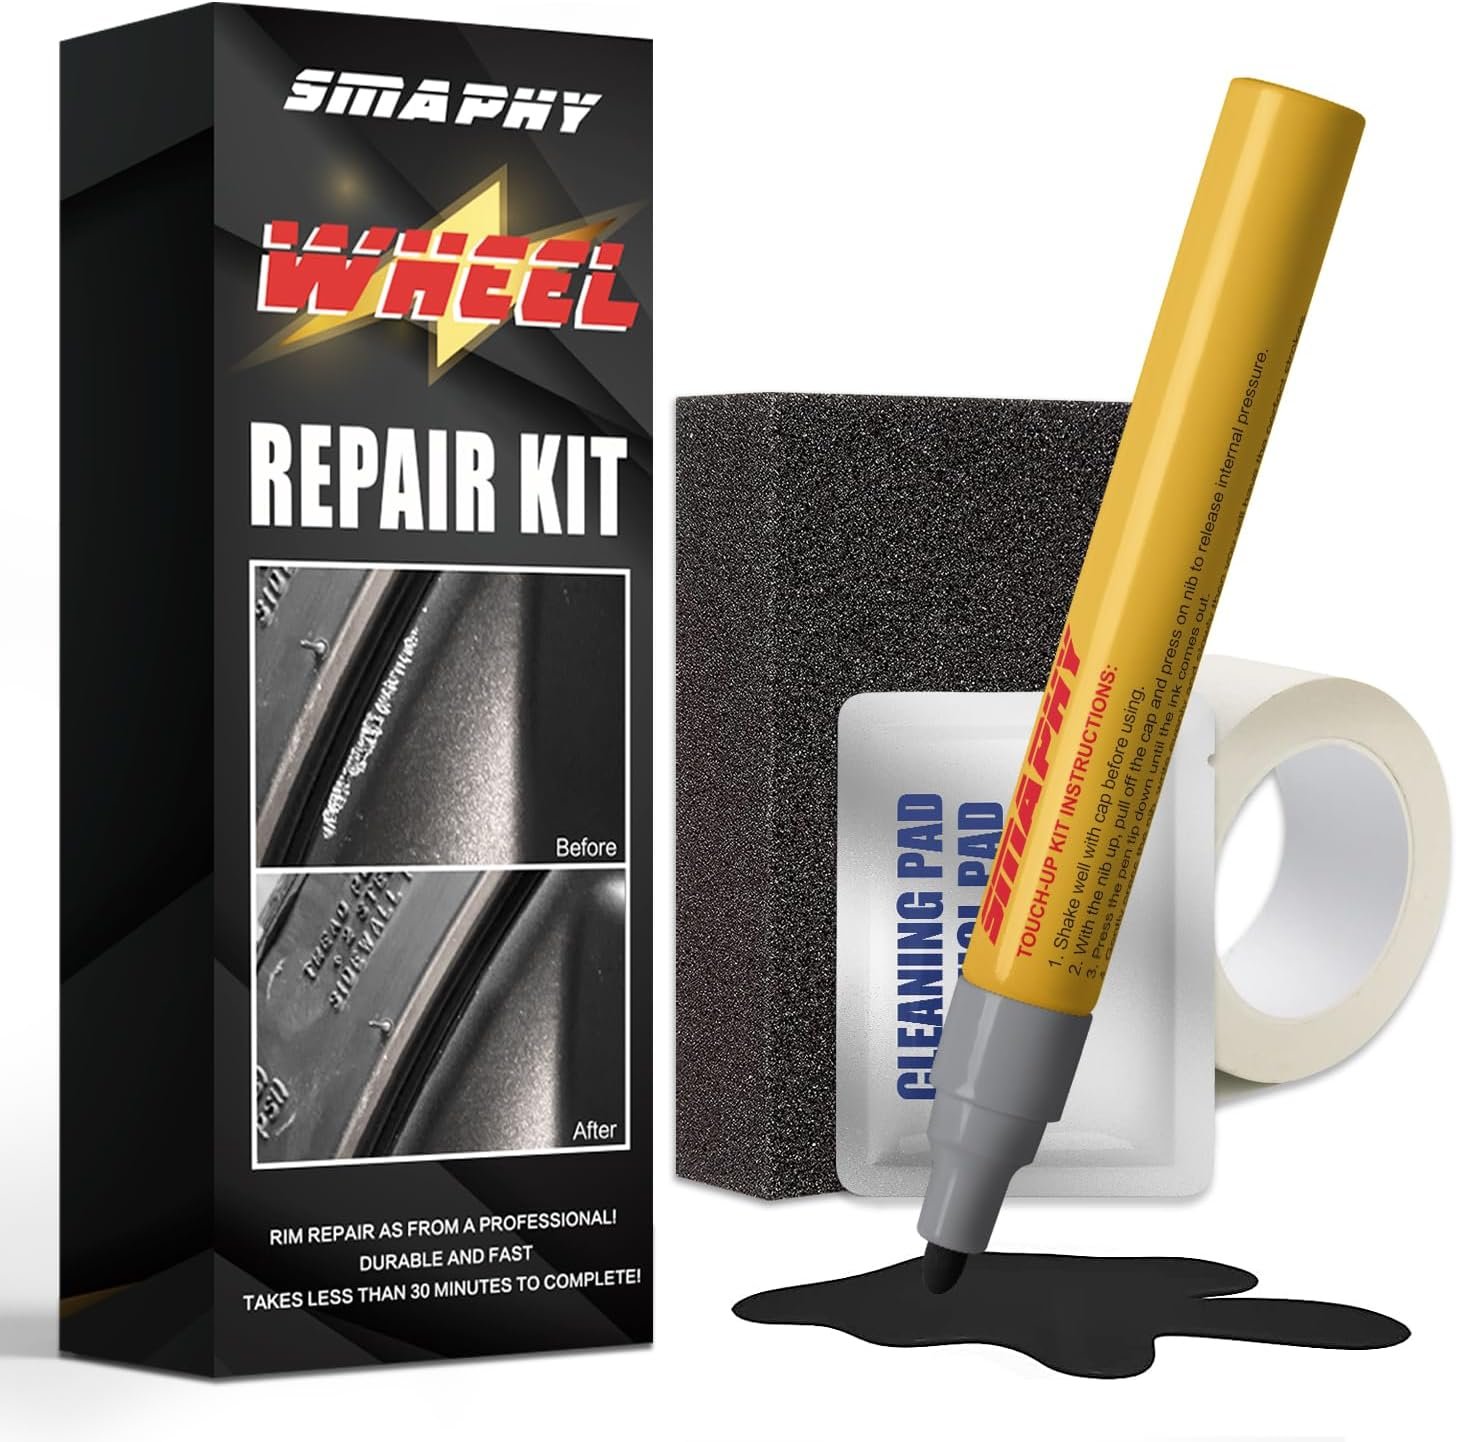 Wheel Repair Kit Review